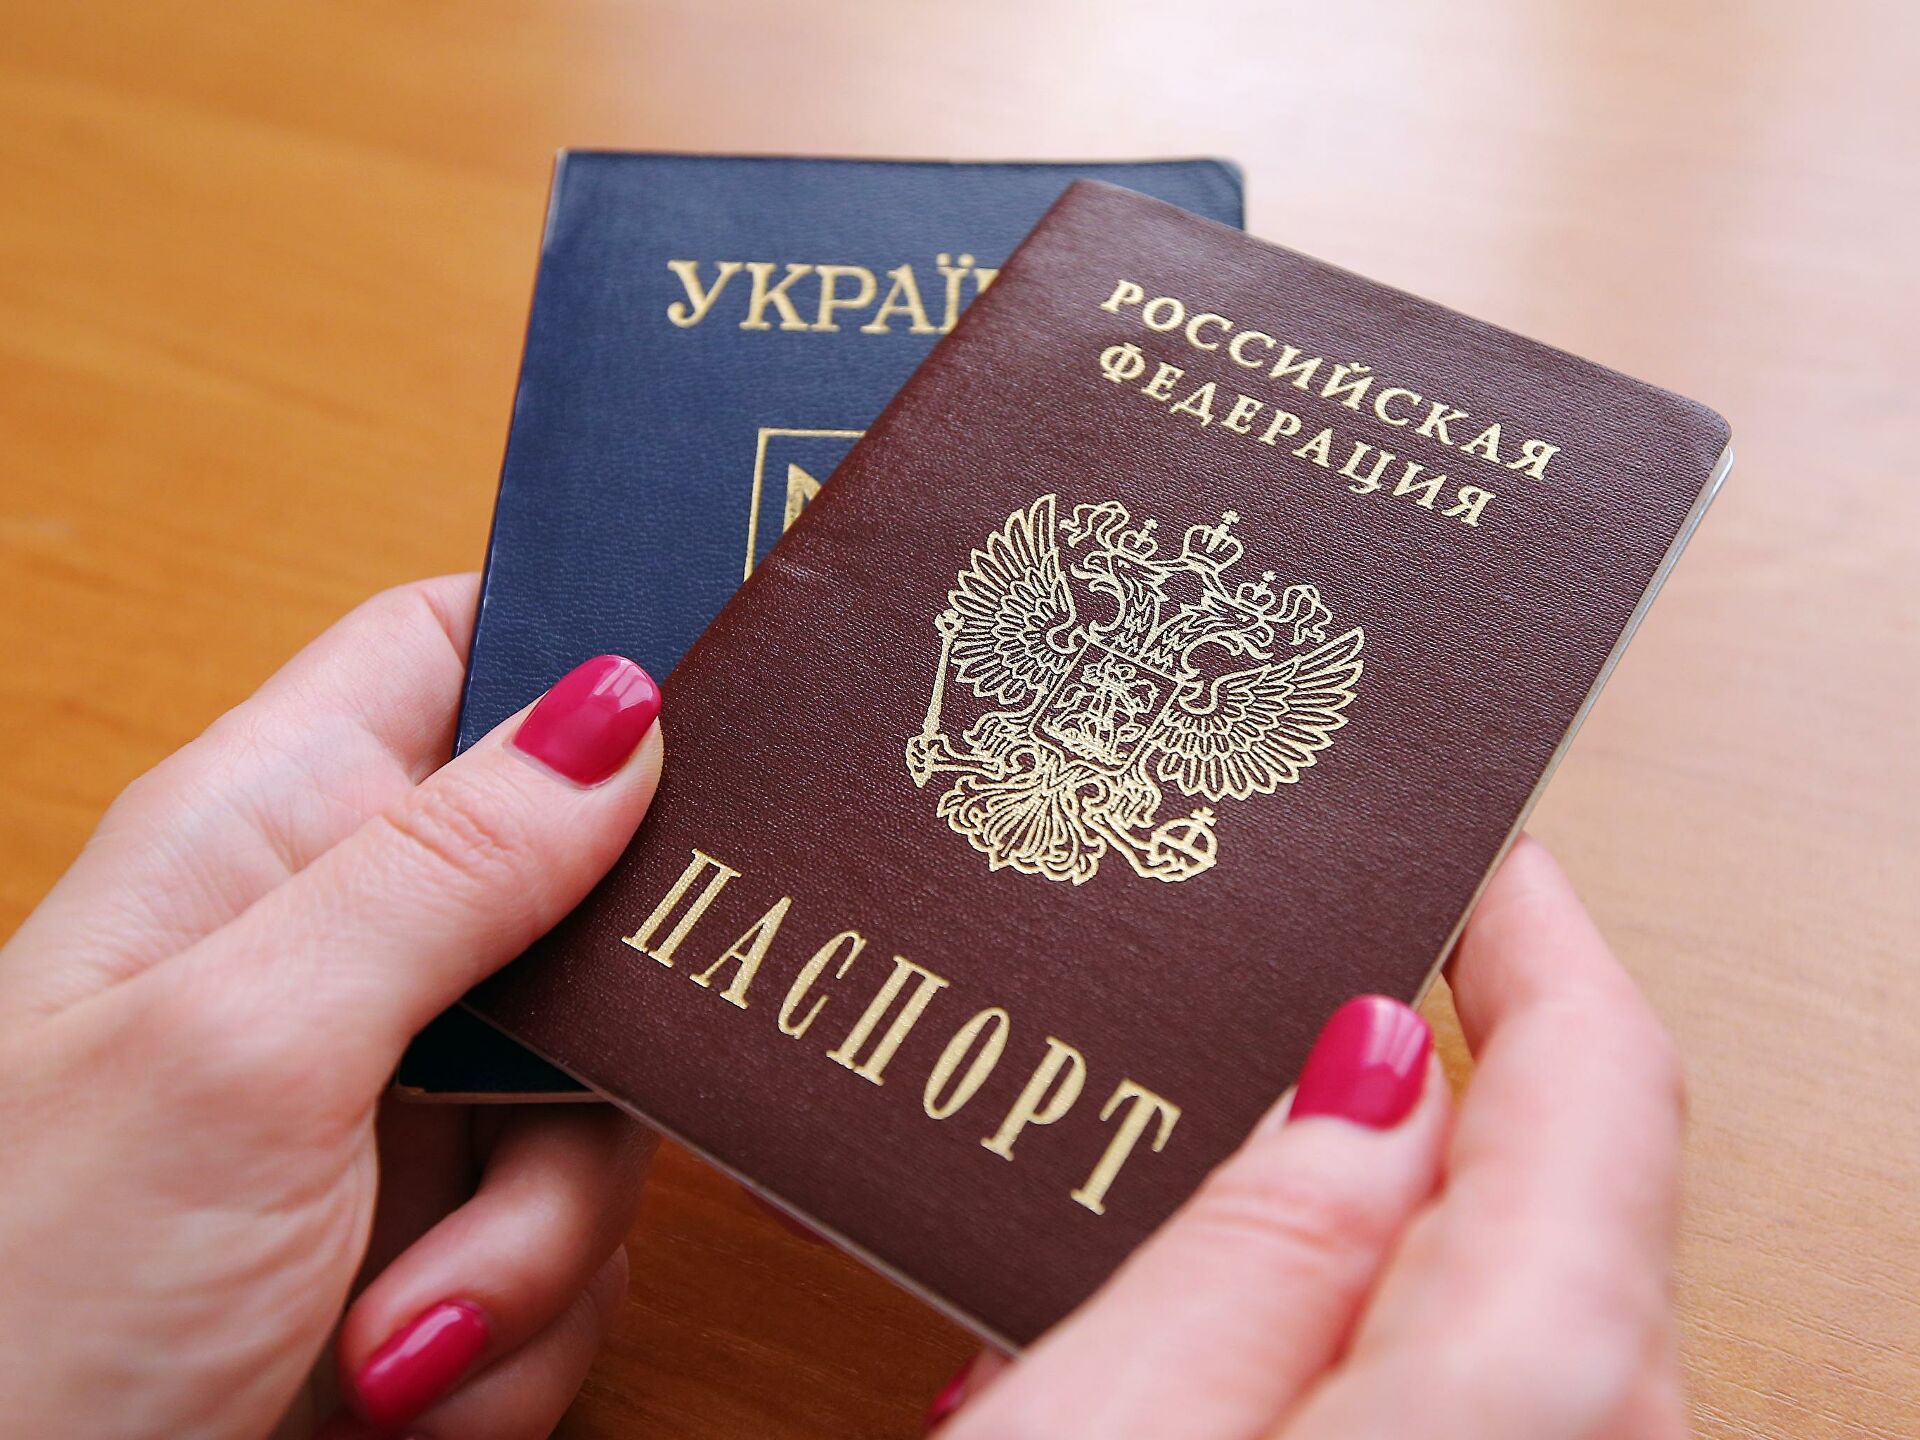 Украина получить российское гражданство